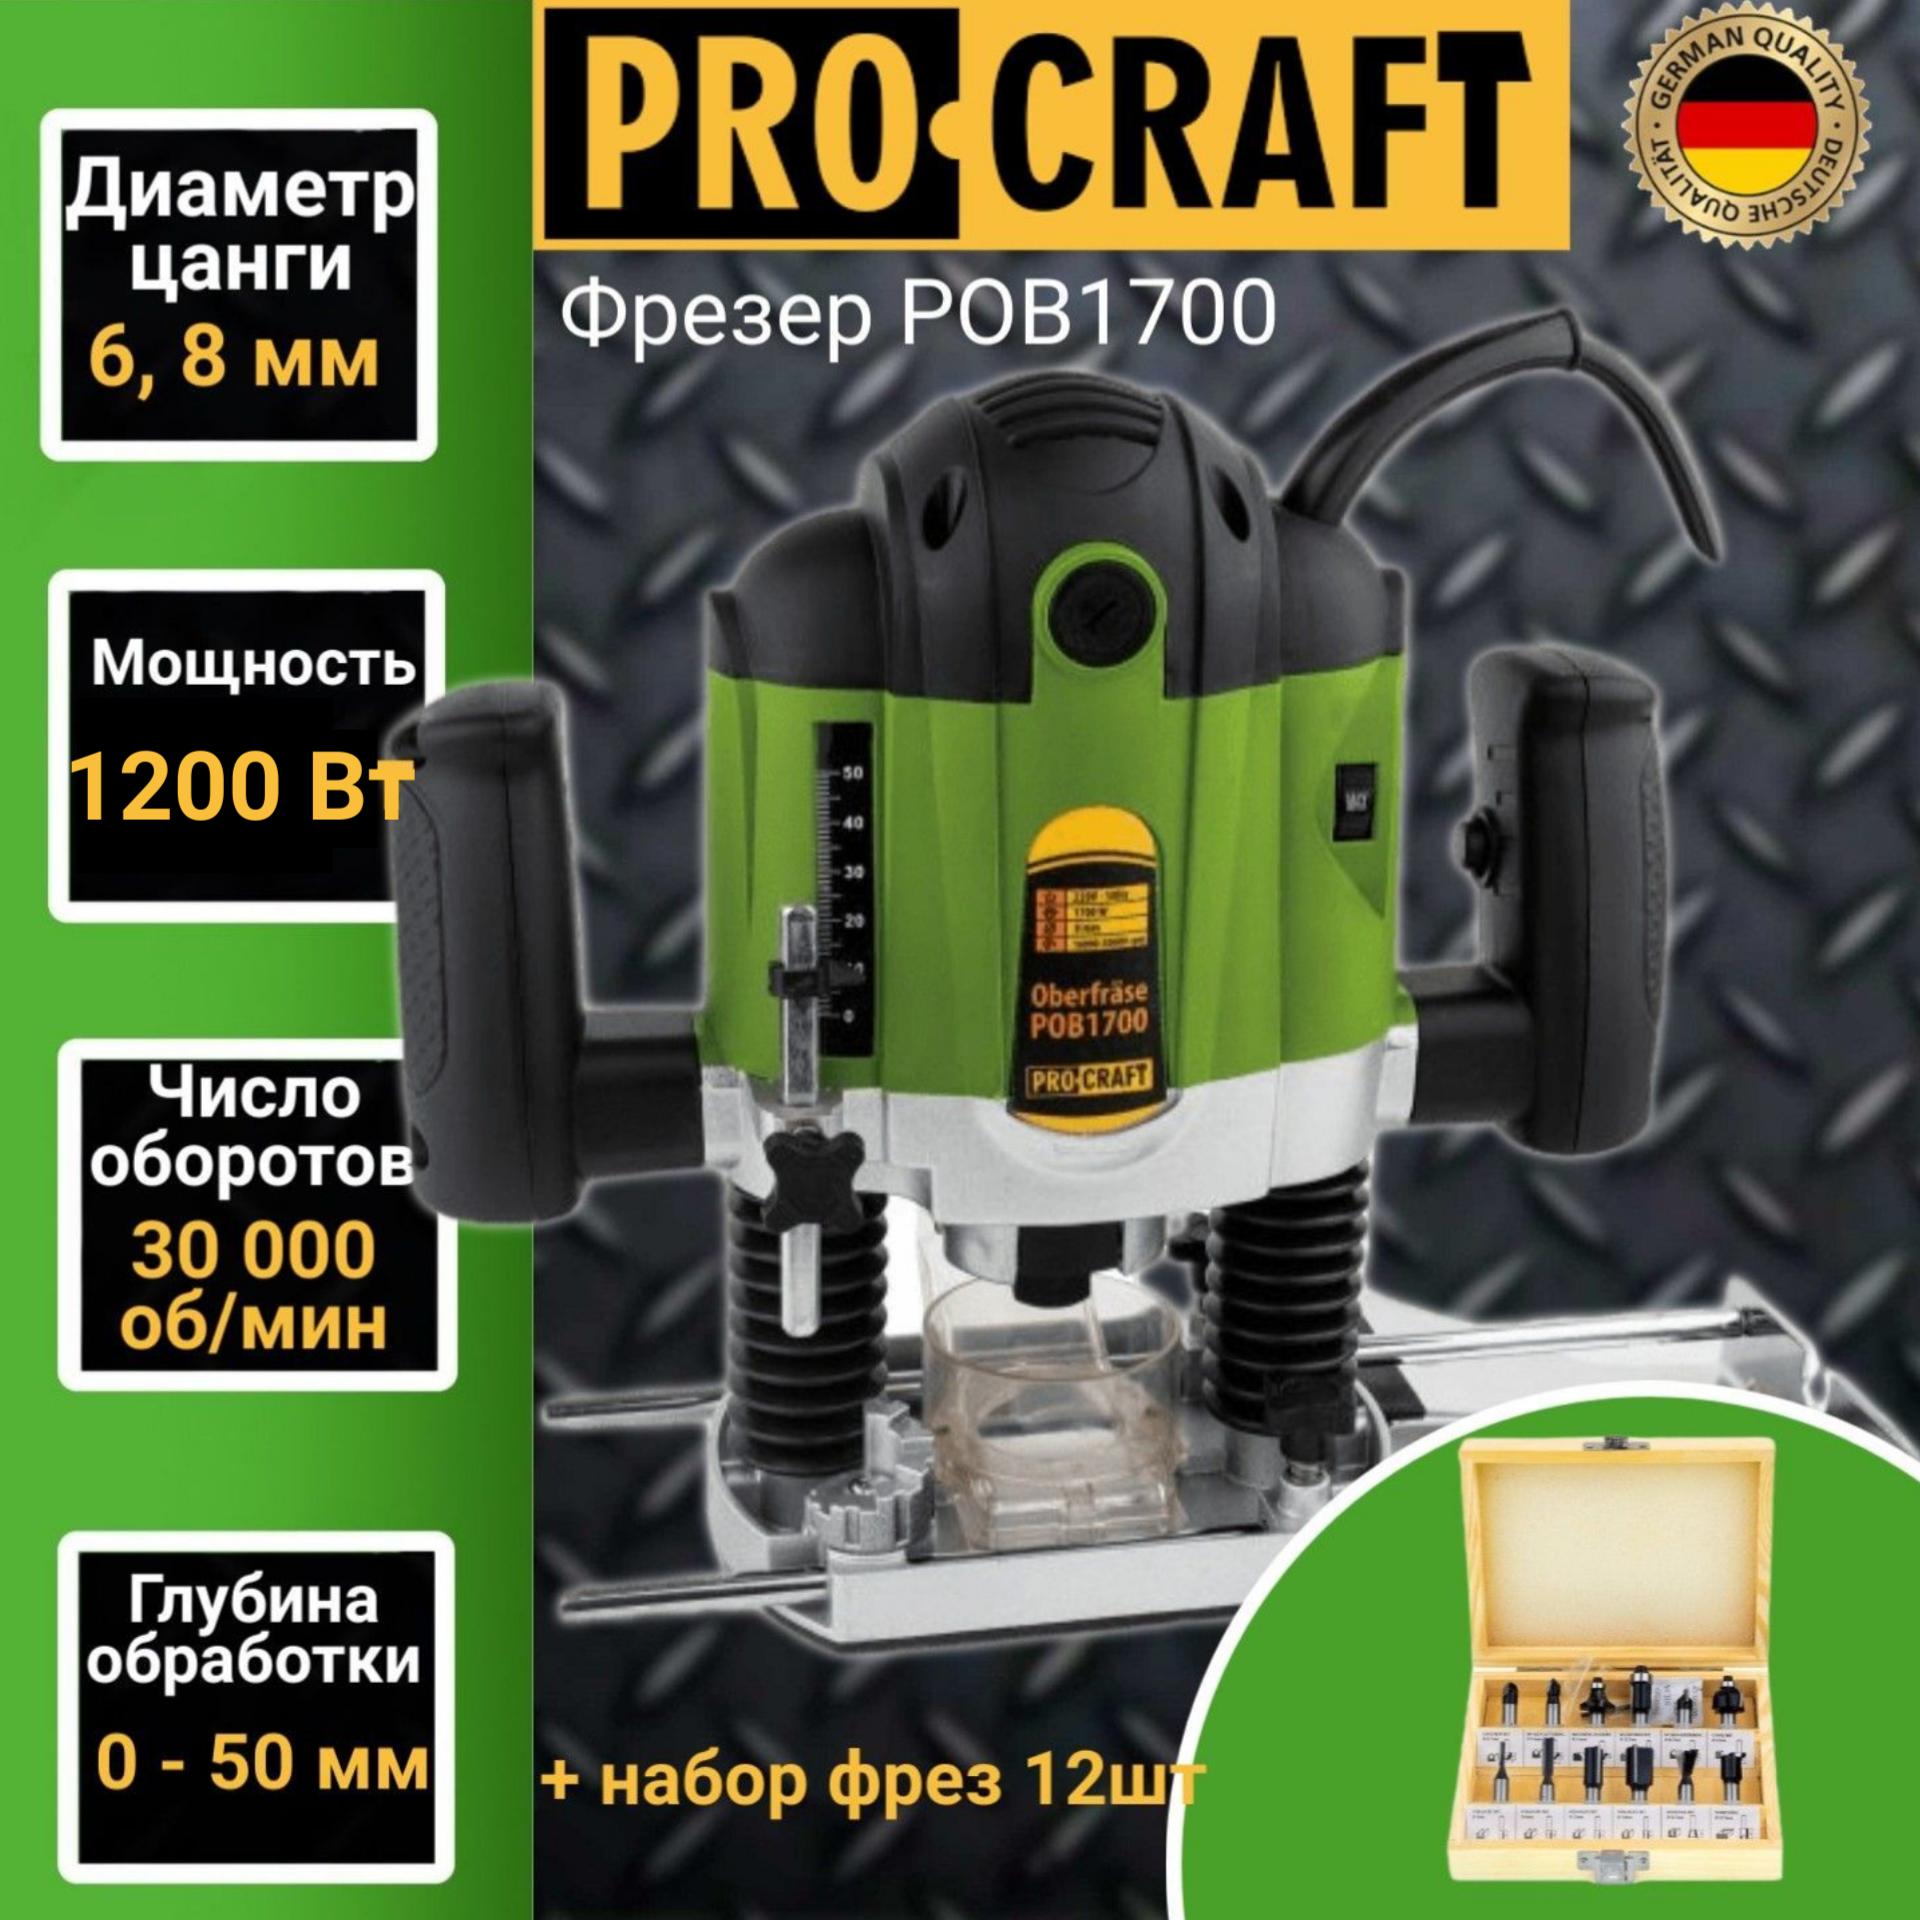 Фрезер электрический Procraft POB-1700 (набор фрез 12шт), цанга 6/8мм, 1200Вт, 30,000об/ми